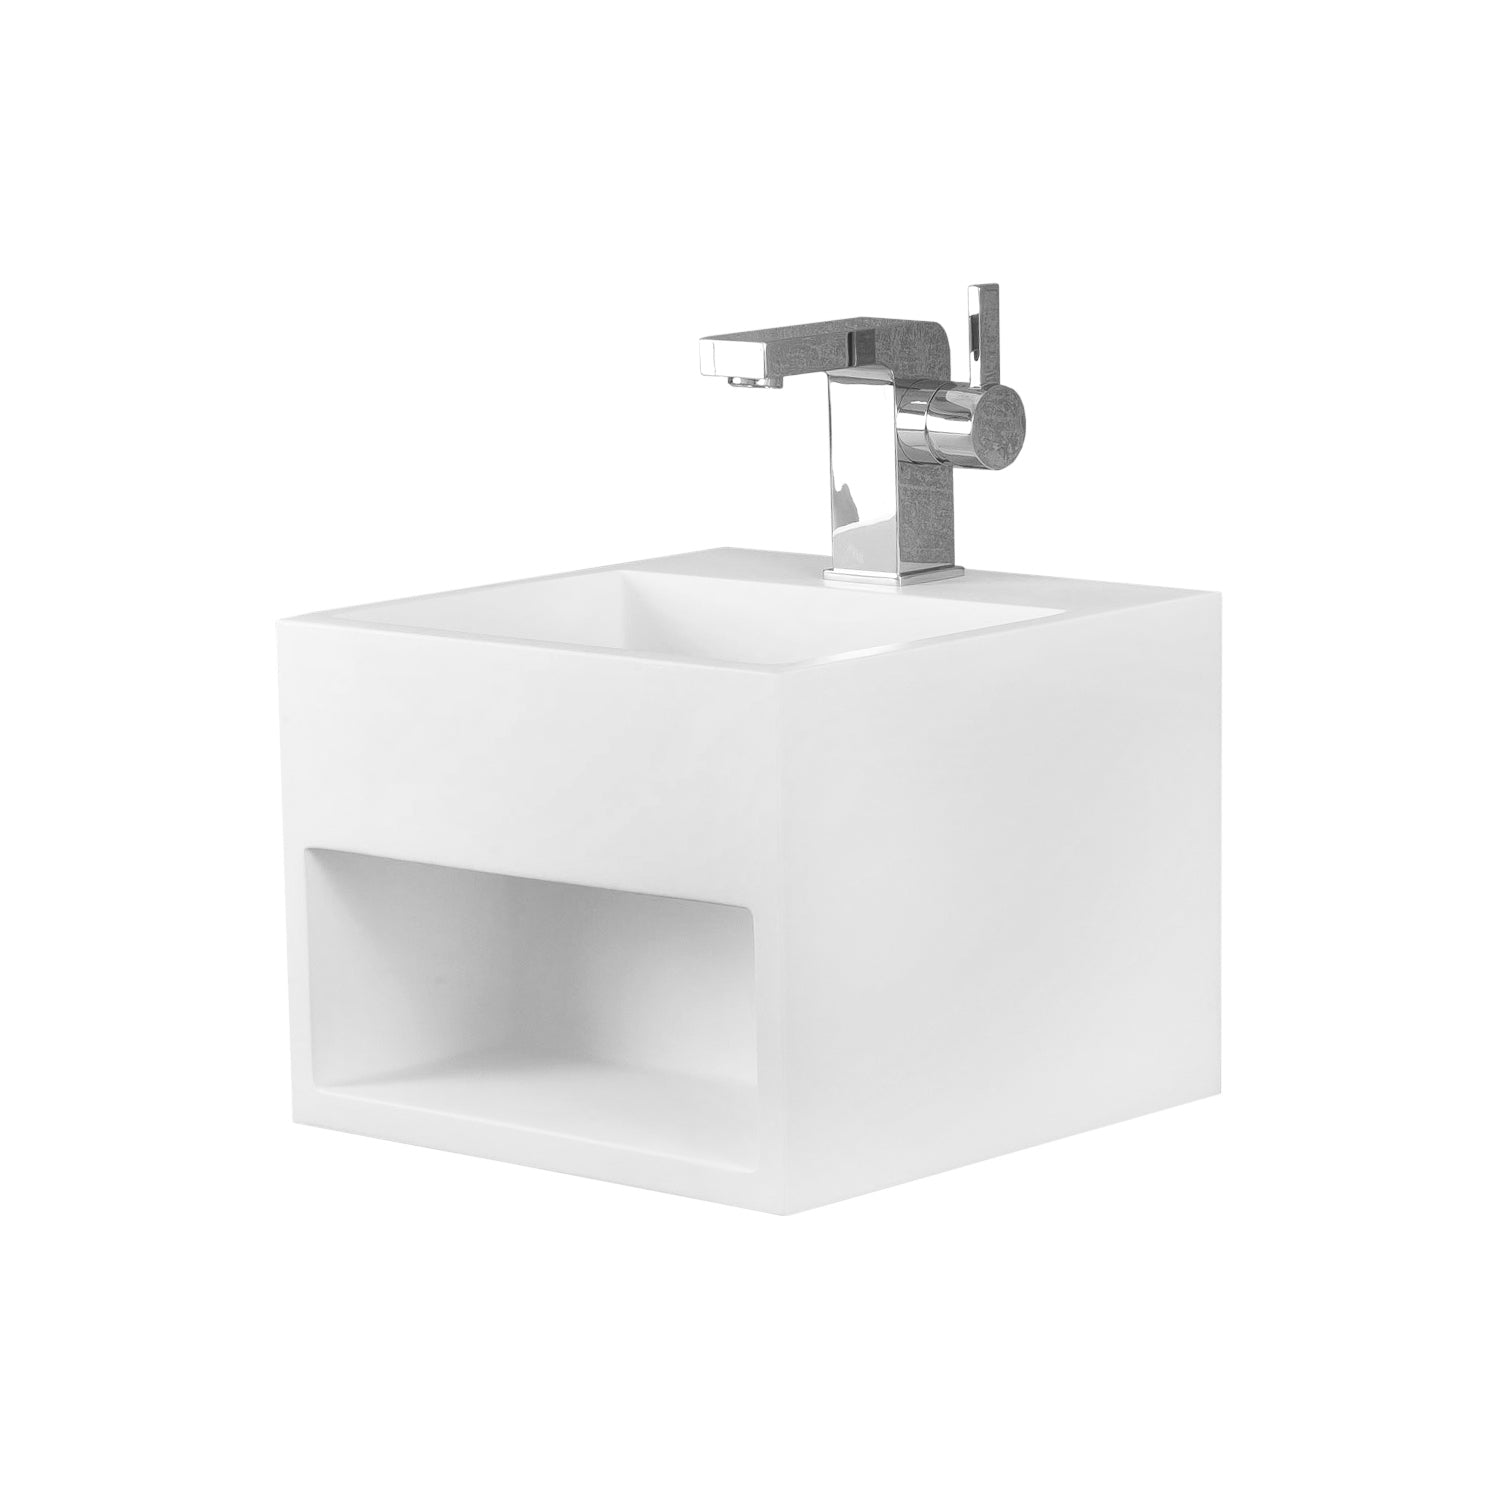 DAX Gabinete para lavabo de baño cuadrado de superficie sólida de un solo tazón, acabado blanco mate, 12-4/5 x 12-4/5 x 9-7/8 pulgadas (DAX-AB-1360)